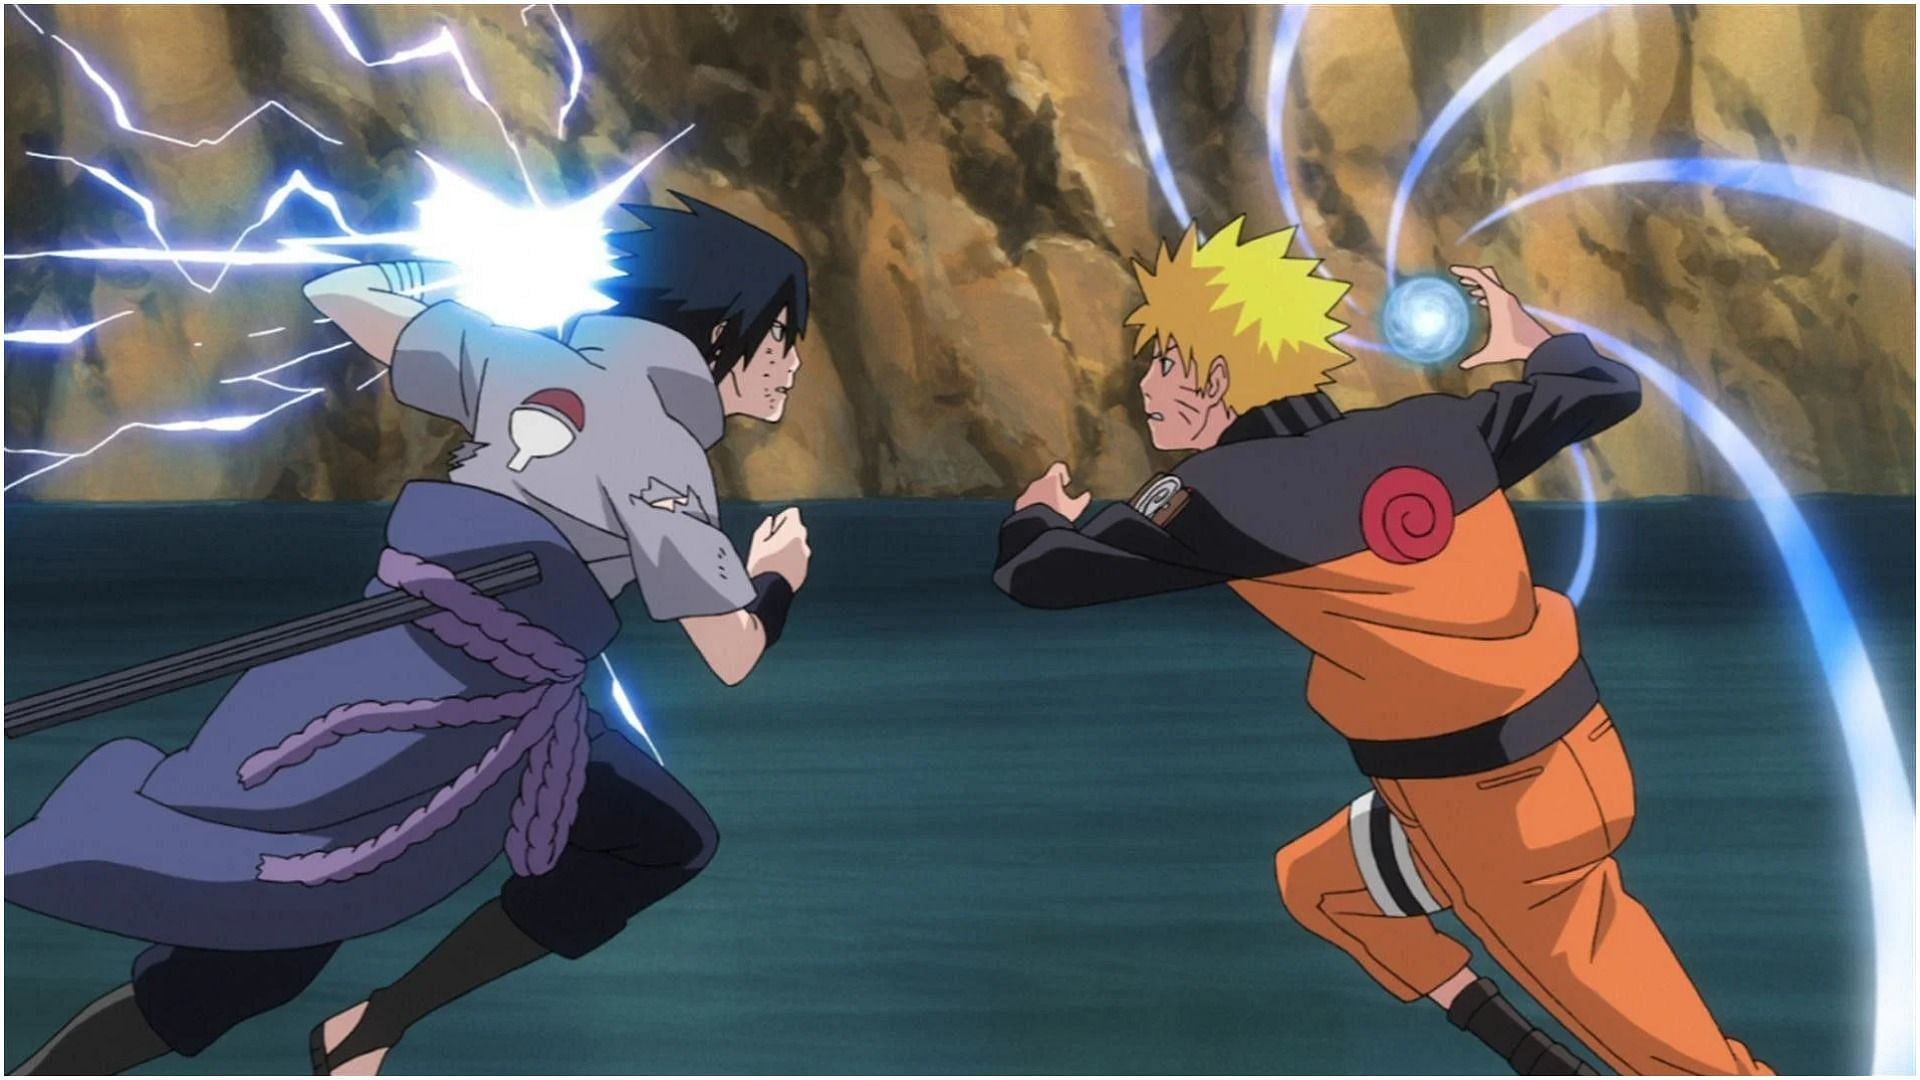 Sasuke and Naruto as seen in Naruto (Image via Studio Pierrot)